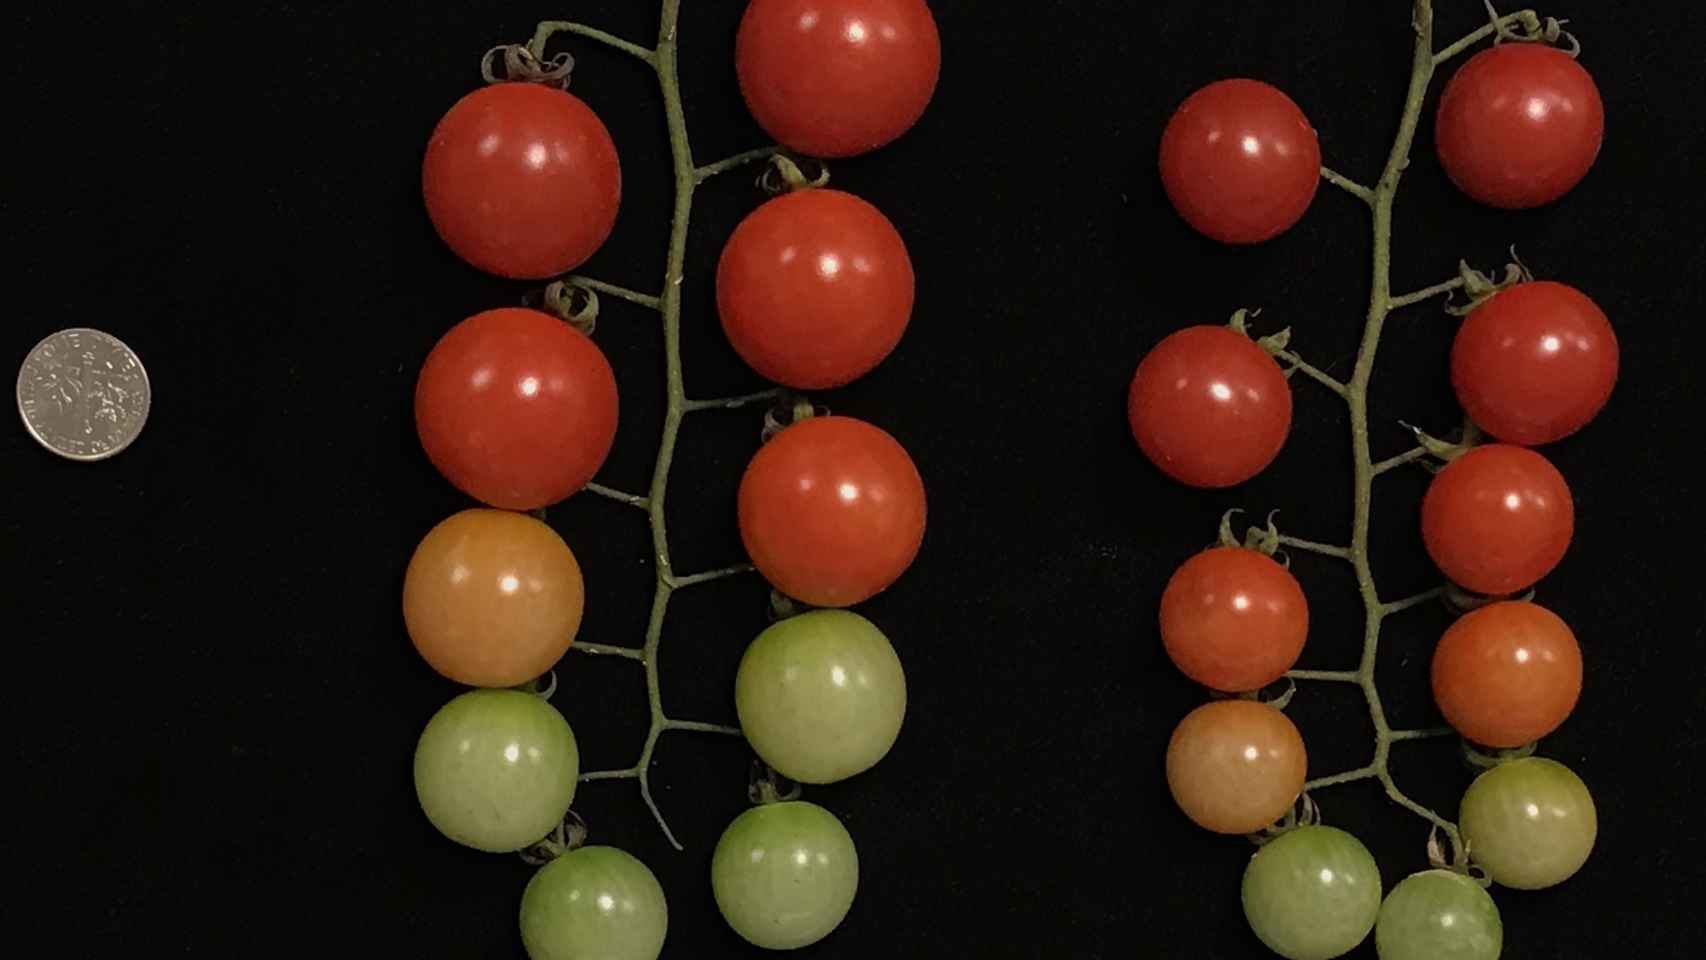 Los tomates con tres copias de genes crecen más que los que solo tienen una. M. Alonge et al./Cell 2020